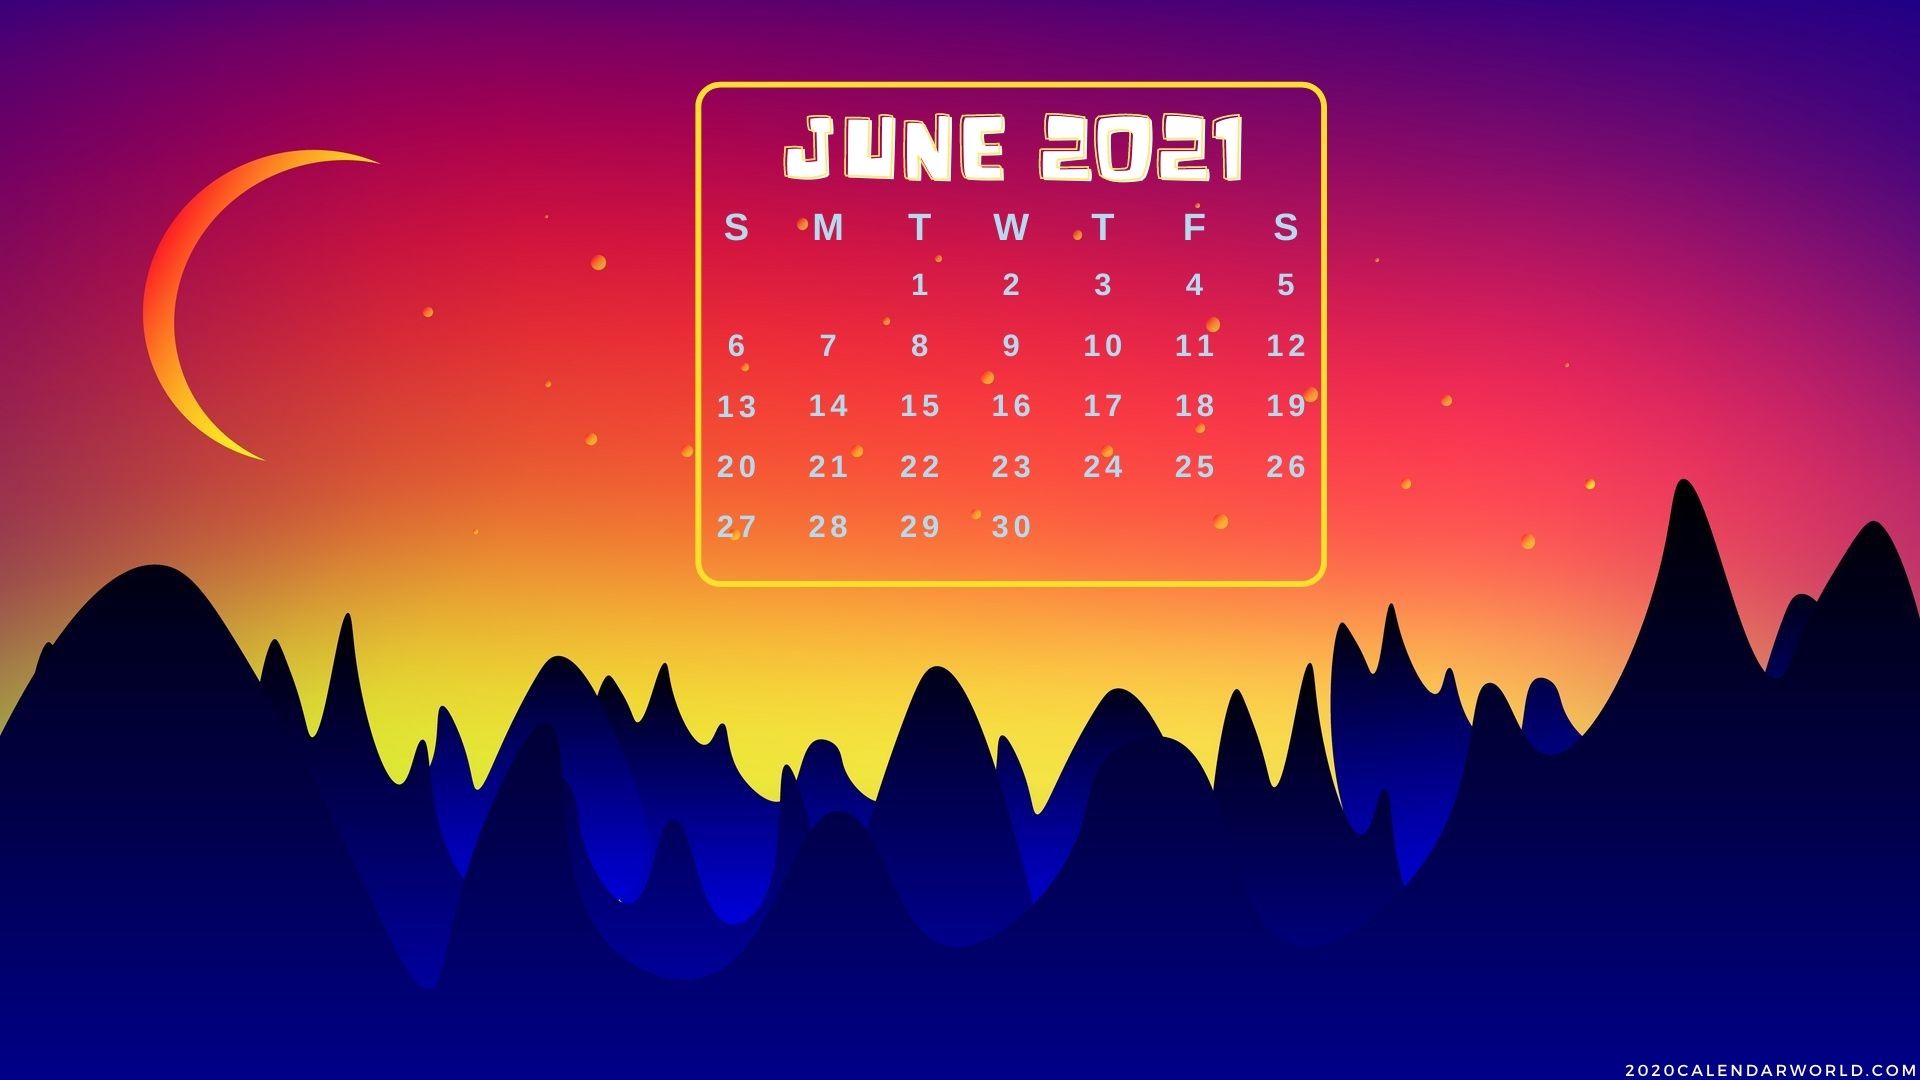 Cute June 2021 Calendar Wallpaper For Desktop Background